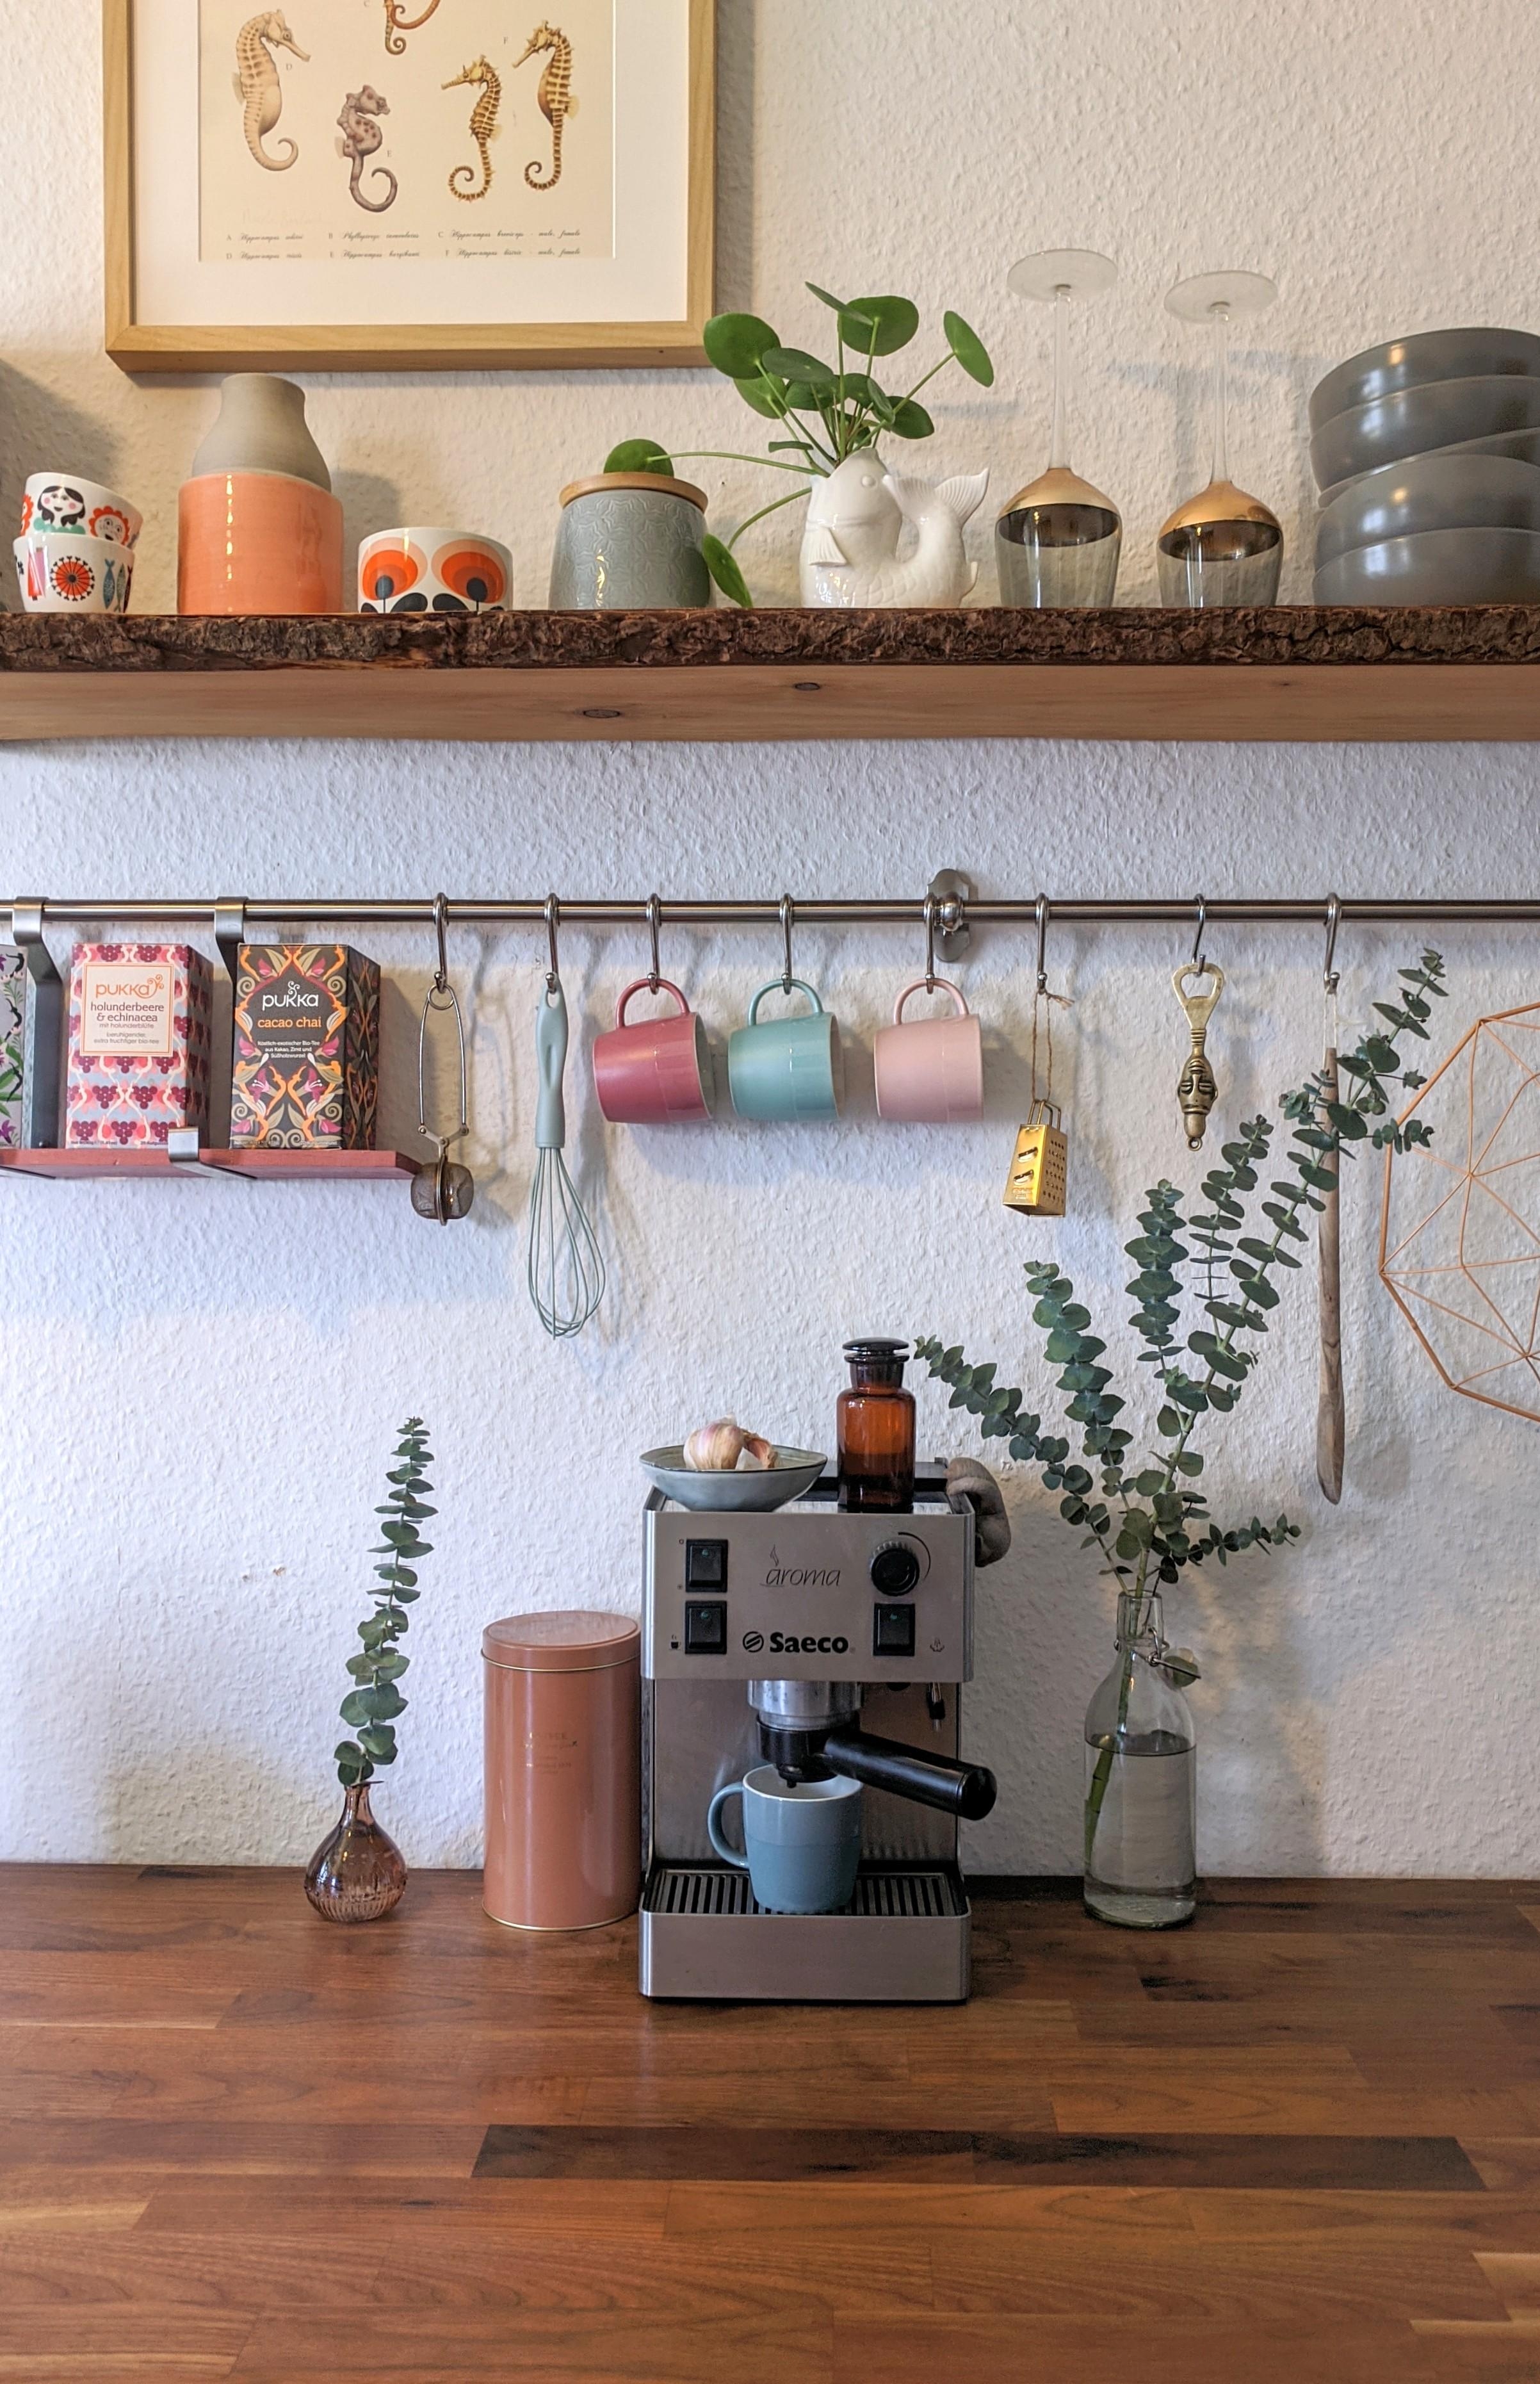 Ein Kaffee am Morgen vertreibt Kummer und Sorgen ☕🌞 #wirbleibenzuhause #küchendeko #pastellfarben #kaffeeecke